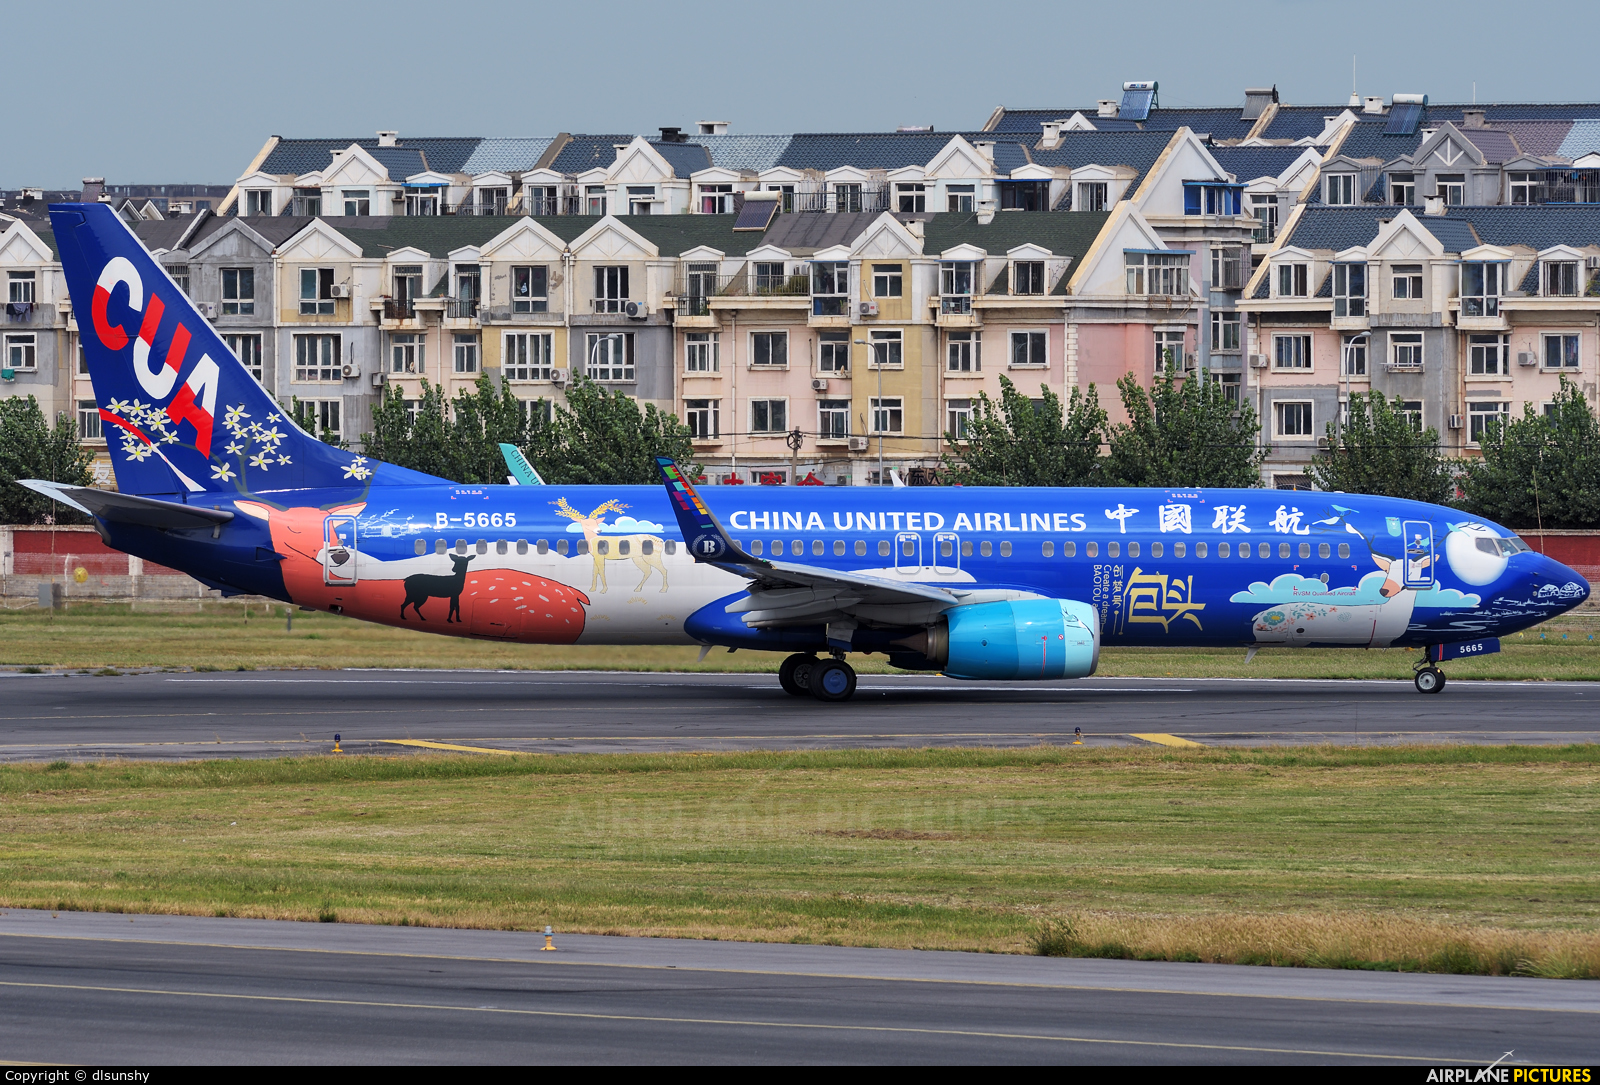 China United Airlines B-5665 aircraft at Dalian Zhoushuizi Int'l